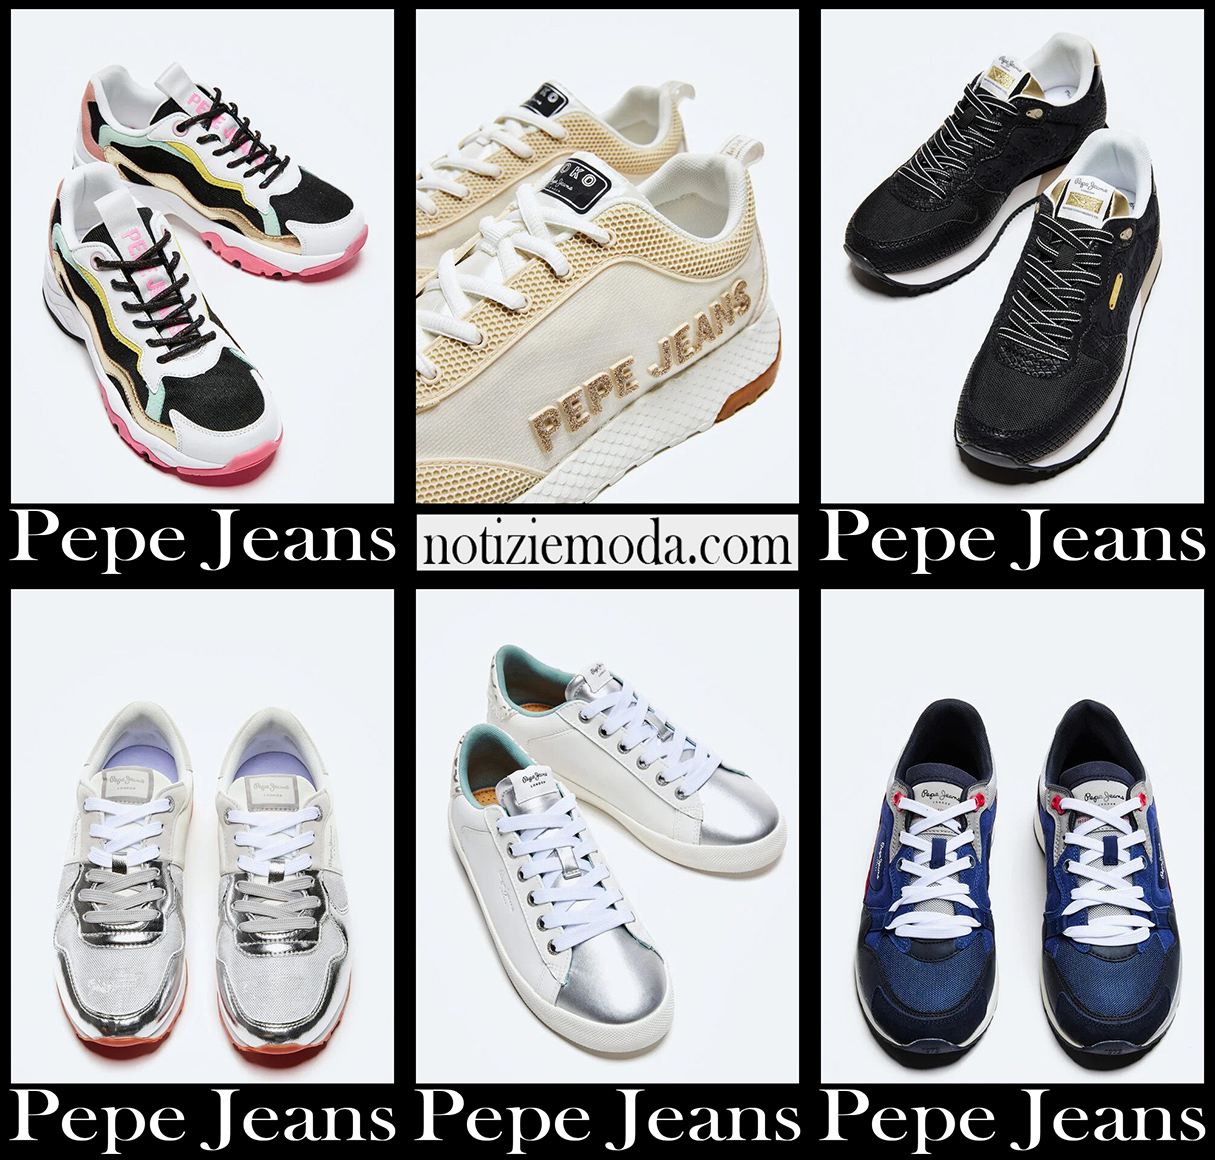 Nuovi arrivi sneakers Pepe Jeans 2021 calzature donna